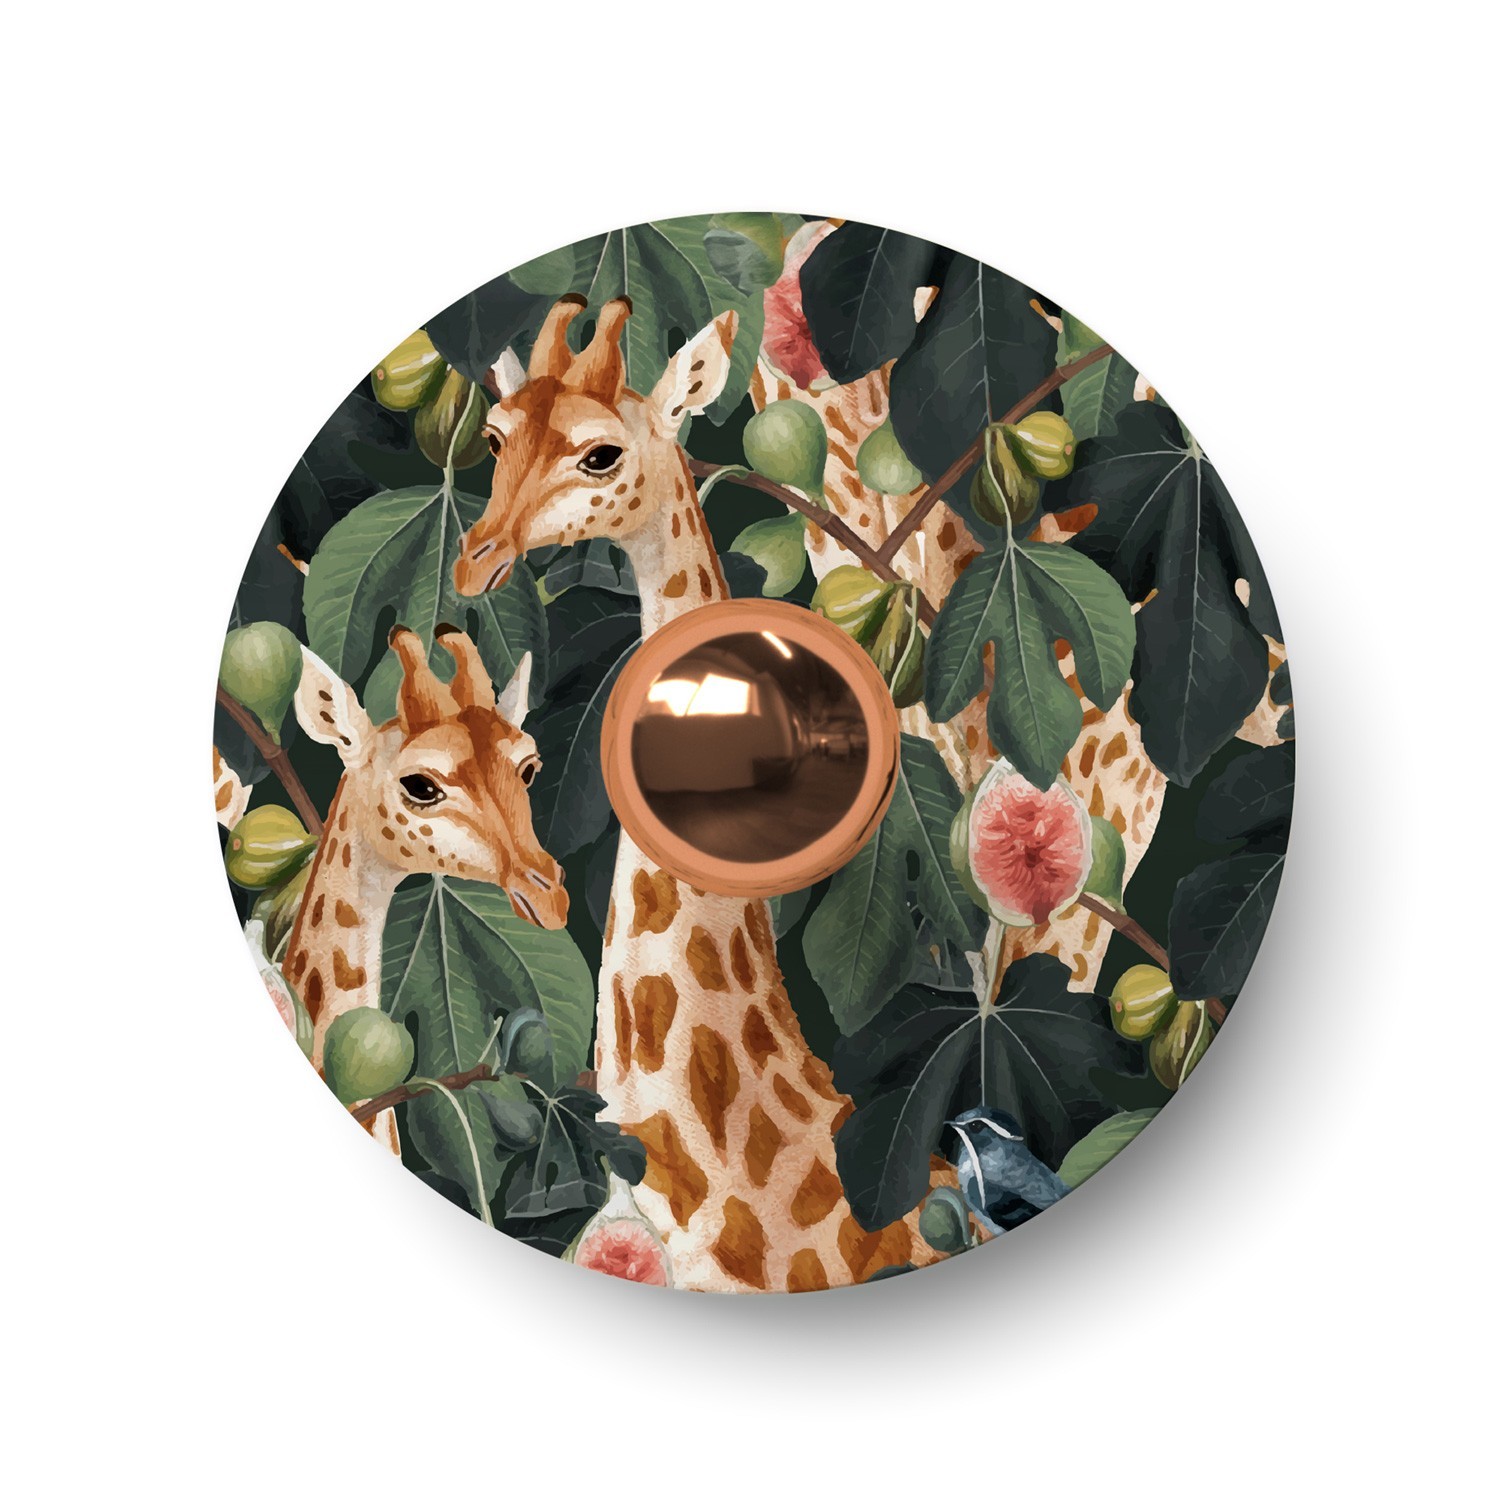 Ellepì mini ravno disk sjenilo s životinjama iz džungle 'Wildlife Whispers', promjer 24 cm - Proizvedeno u Italiji